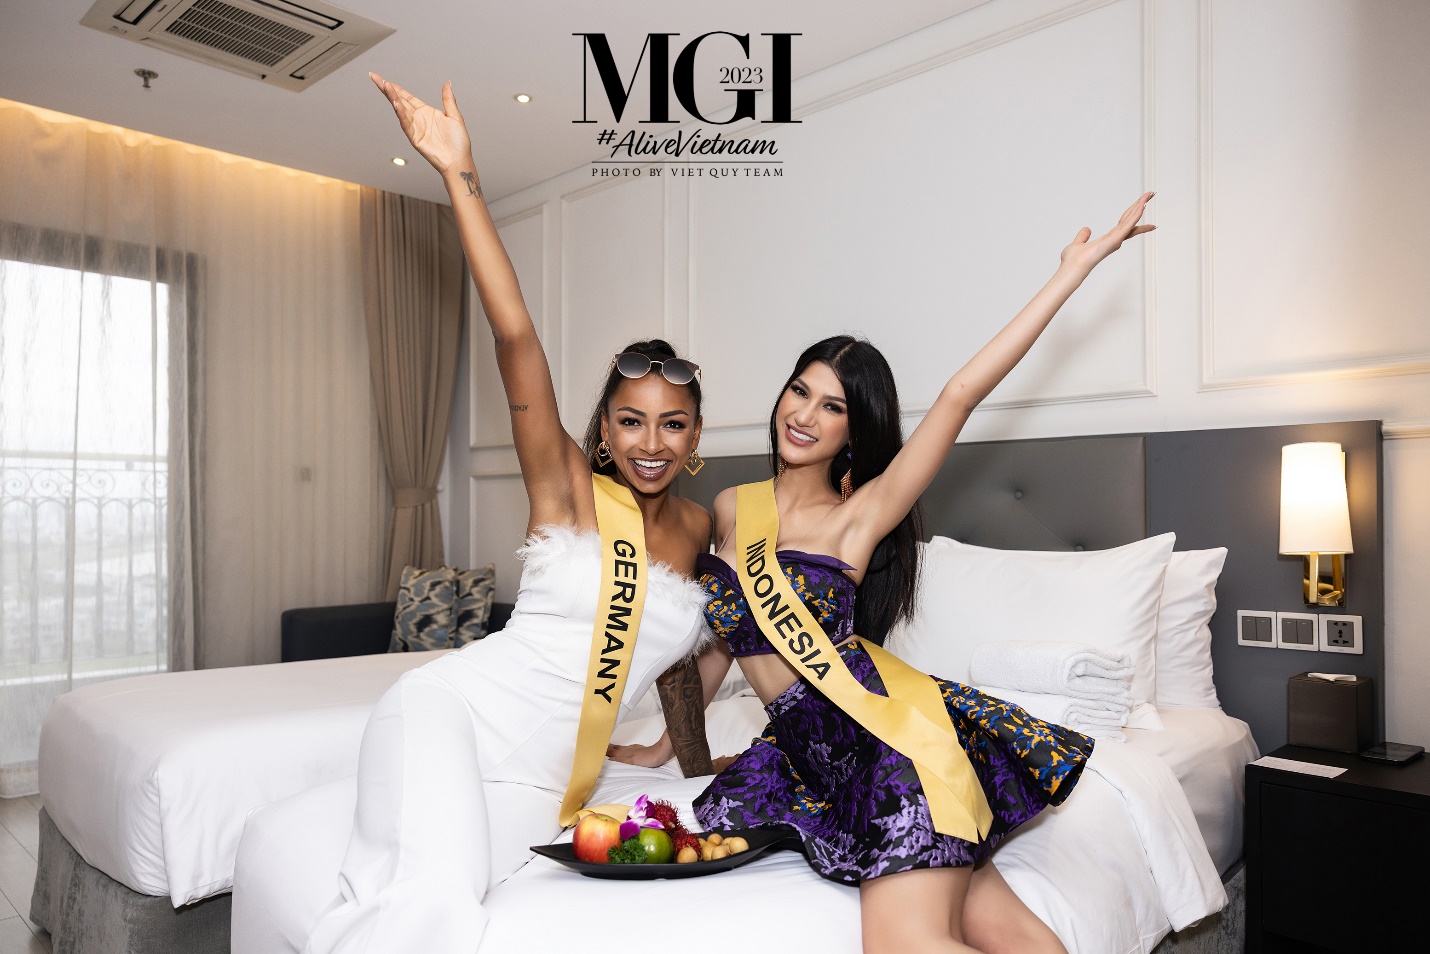 Khám phá khách sạn dát vàng - nơi các thí sinh Miss Grand International 2023 lưu trú tại Đà Nẵng - Ảnh 3.